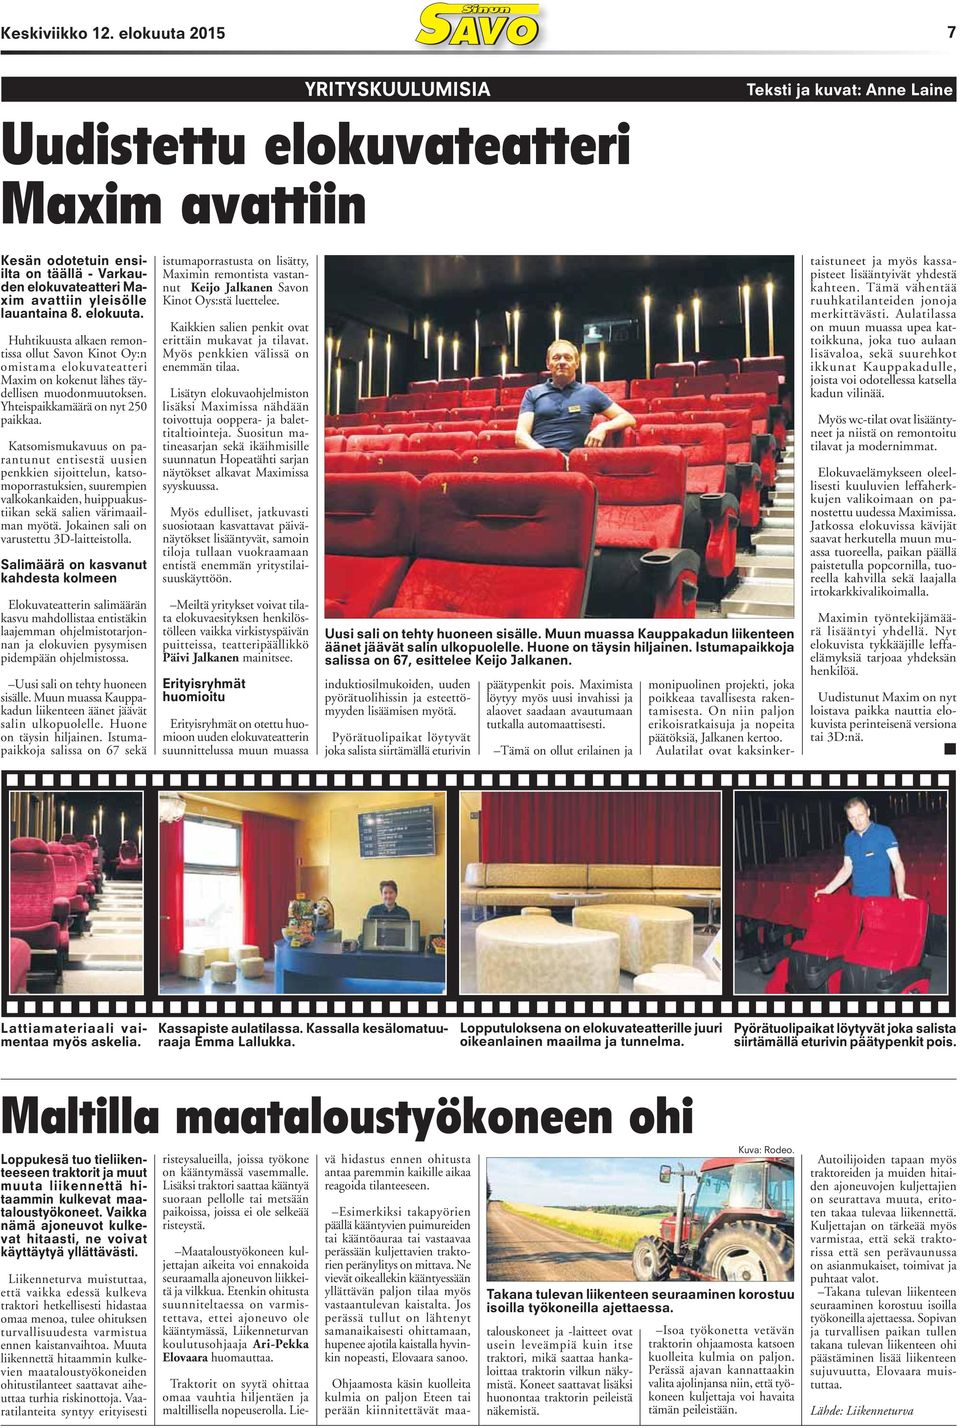 lauantaina 8. elokuuta. Huhtikuusta alkaen remontissa ollut Savon Kinot Oy:n omistama elokuvateatteri Maxim on kokenut lähes täydellisen muodonmuutoksen. Yhteispaikkamäärä on nyt 250 paikkaa.